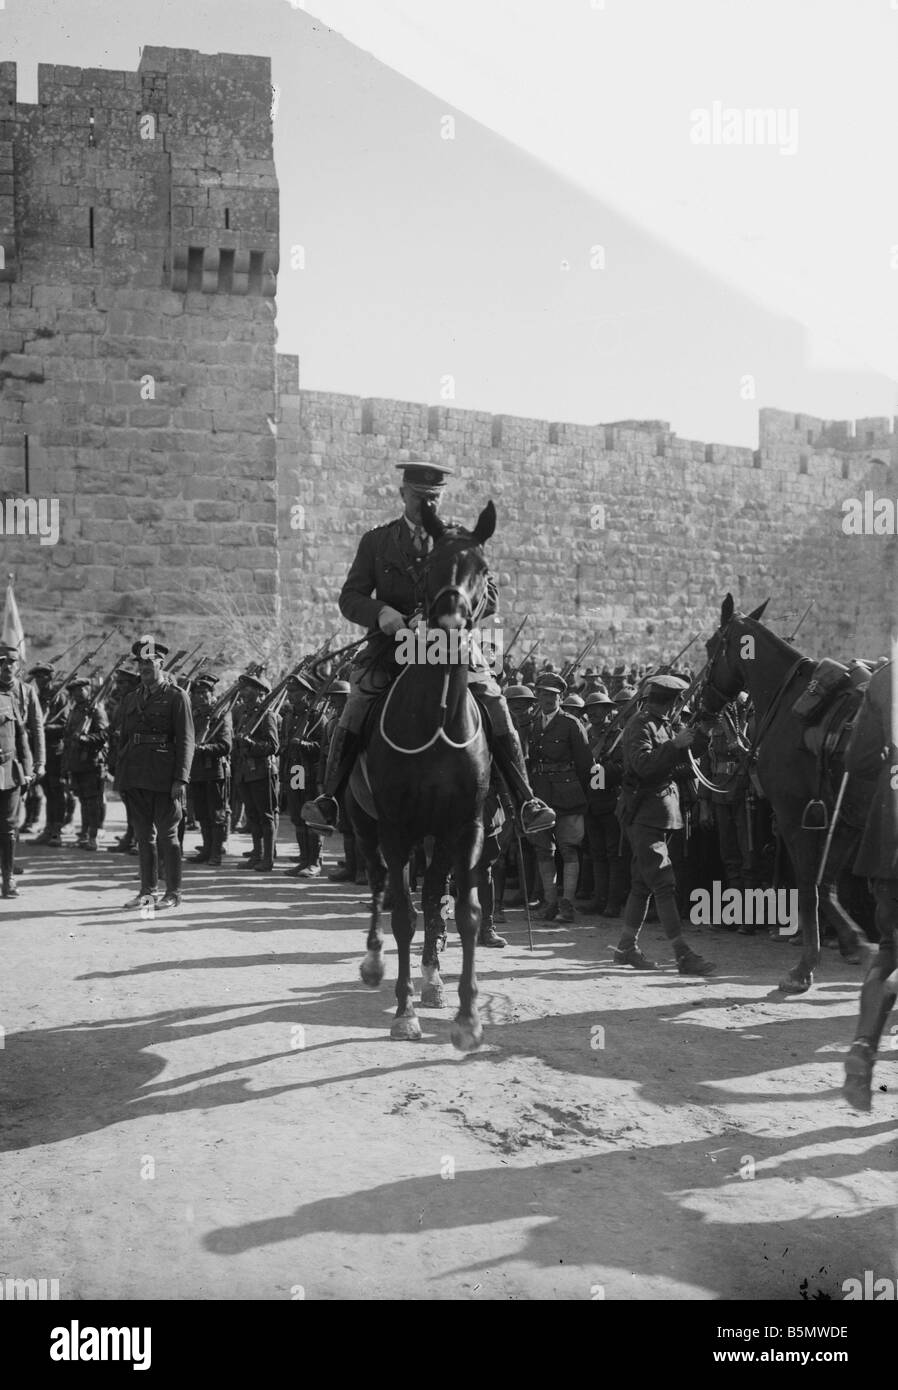 9È 1917 12 11 A1 WW mi cattura di Gerusalemme dalla Gran Bretagna la guerra mondiale I britannici turco combatte la cattura di Gerusalemme da parte di truppe britanniche Foto Stock